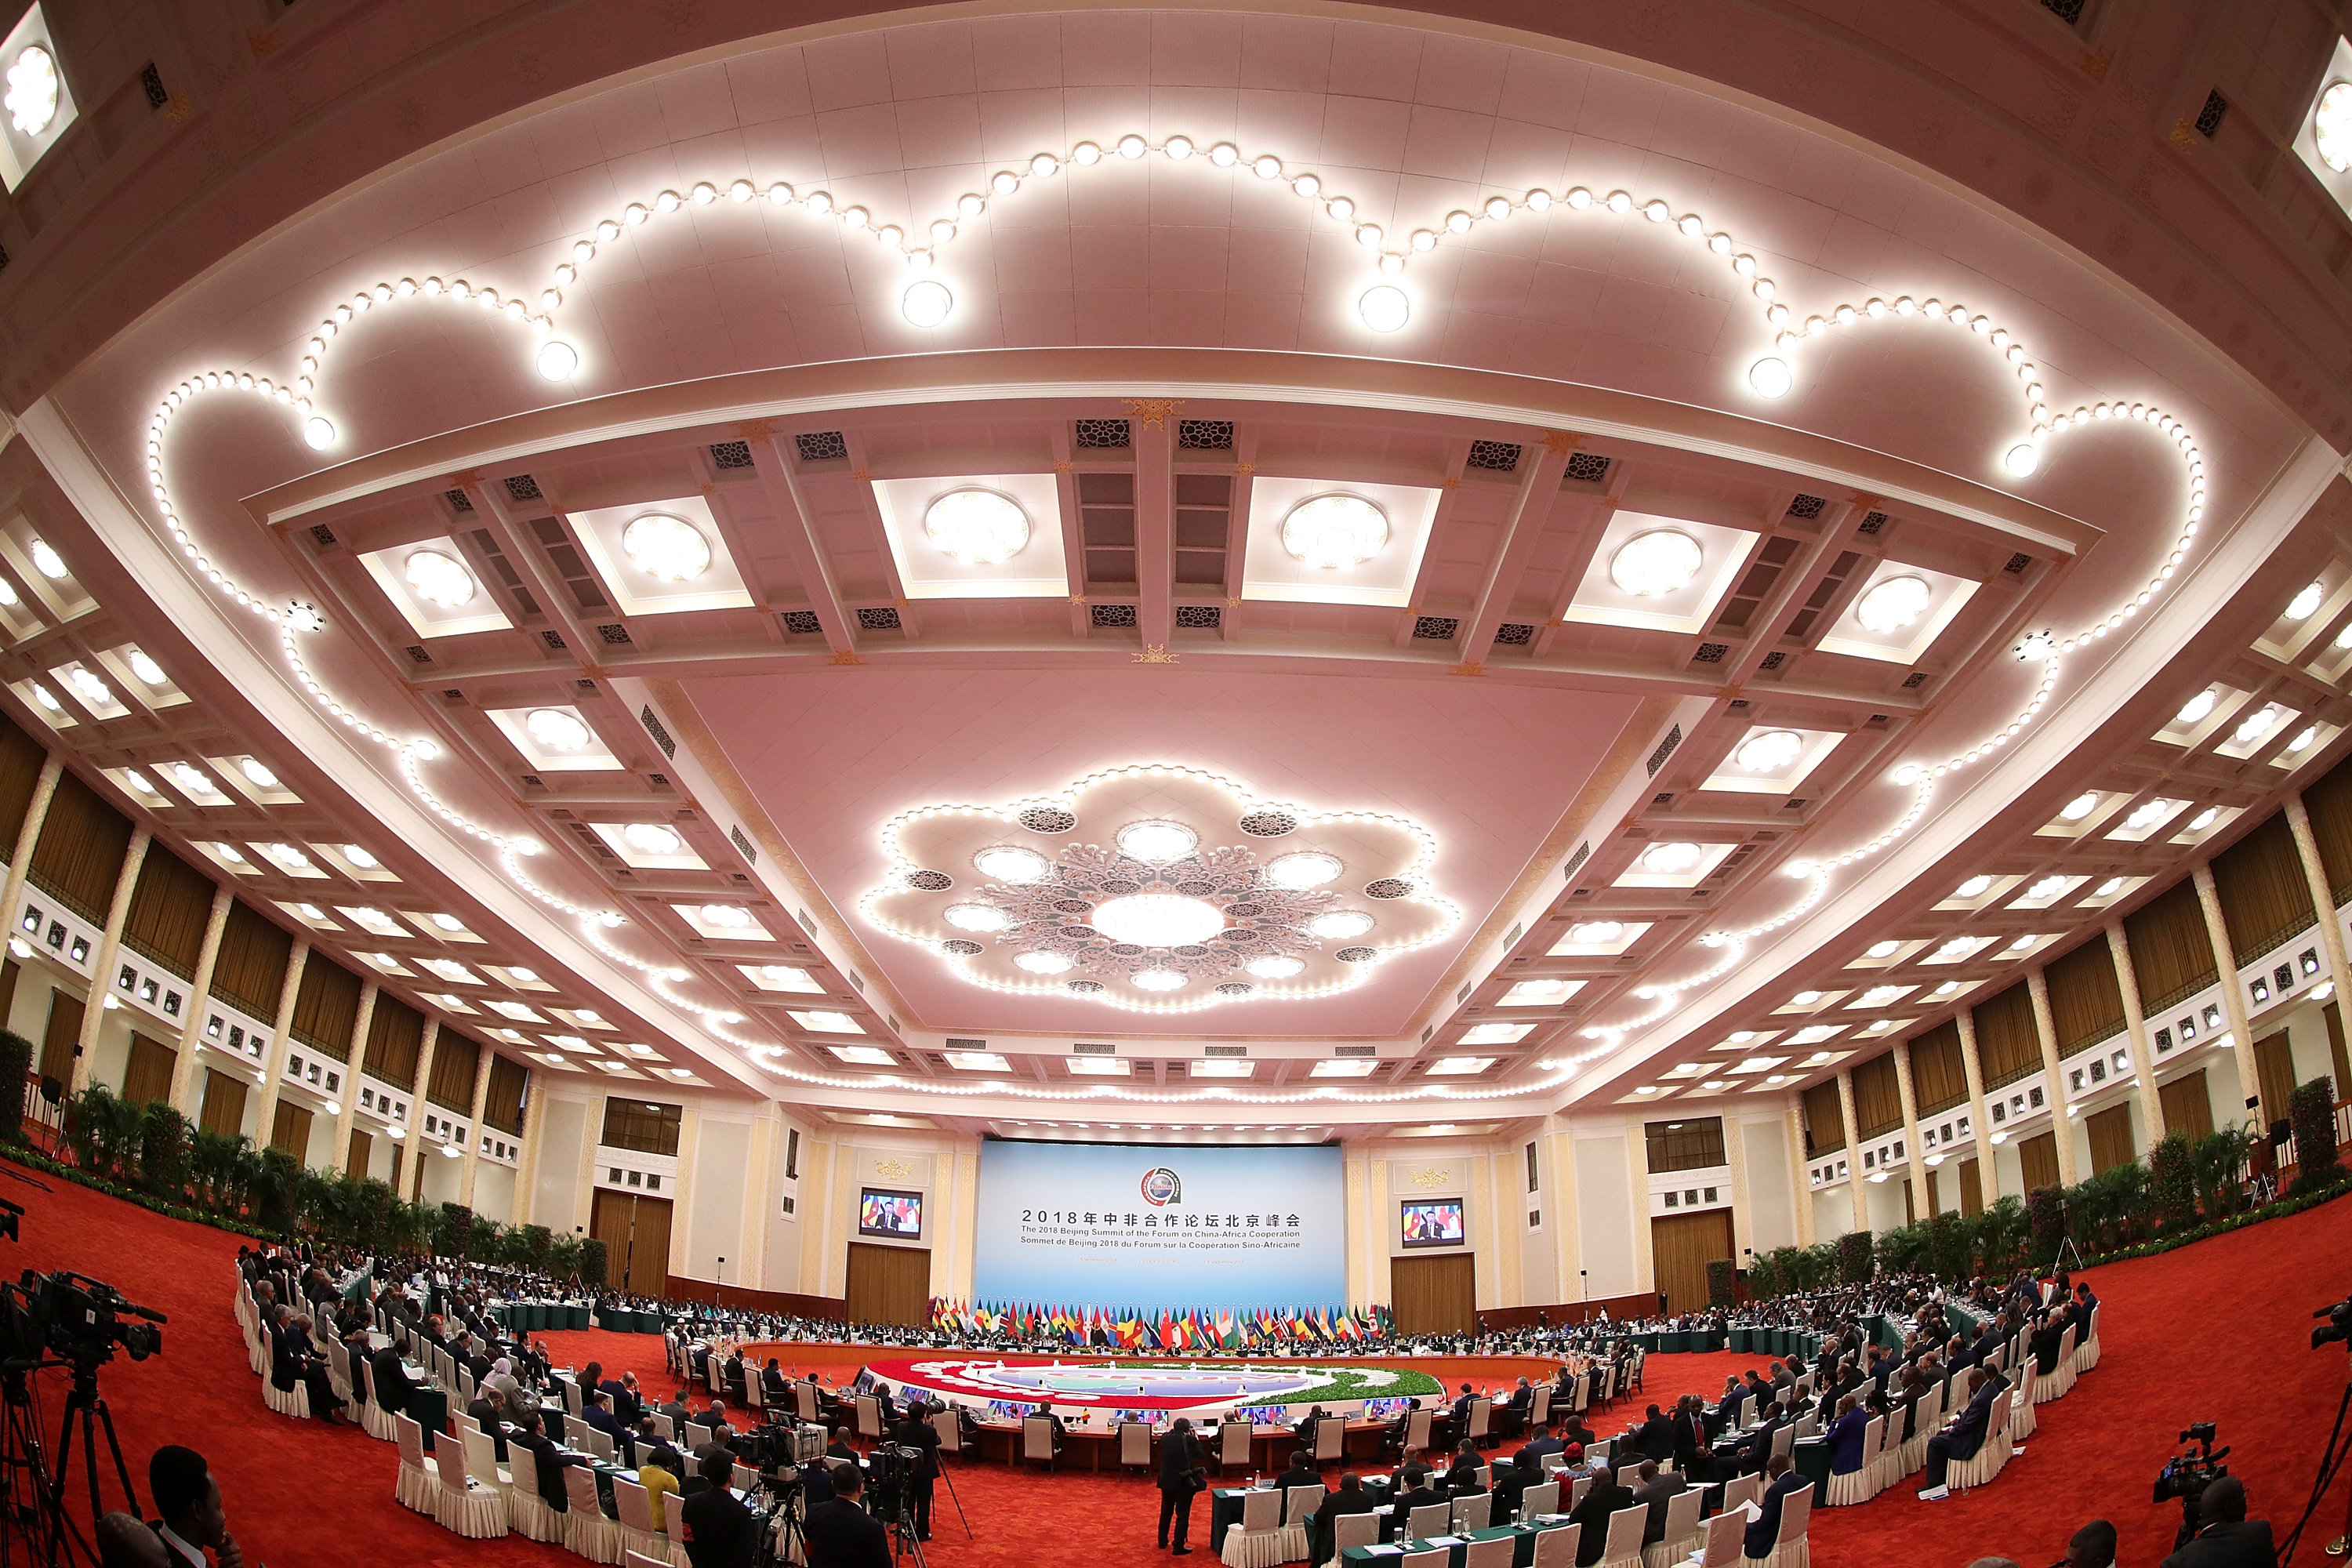 قاعة الشعب الكبرى ببكين